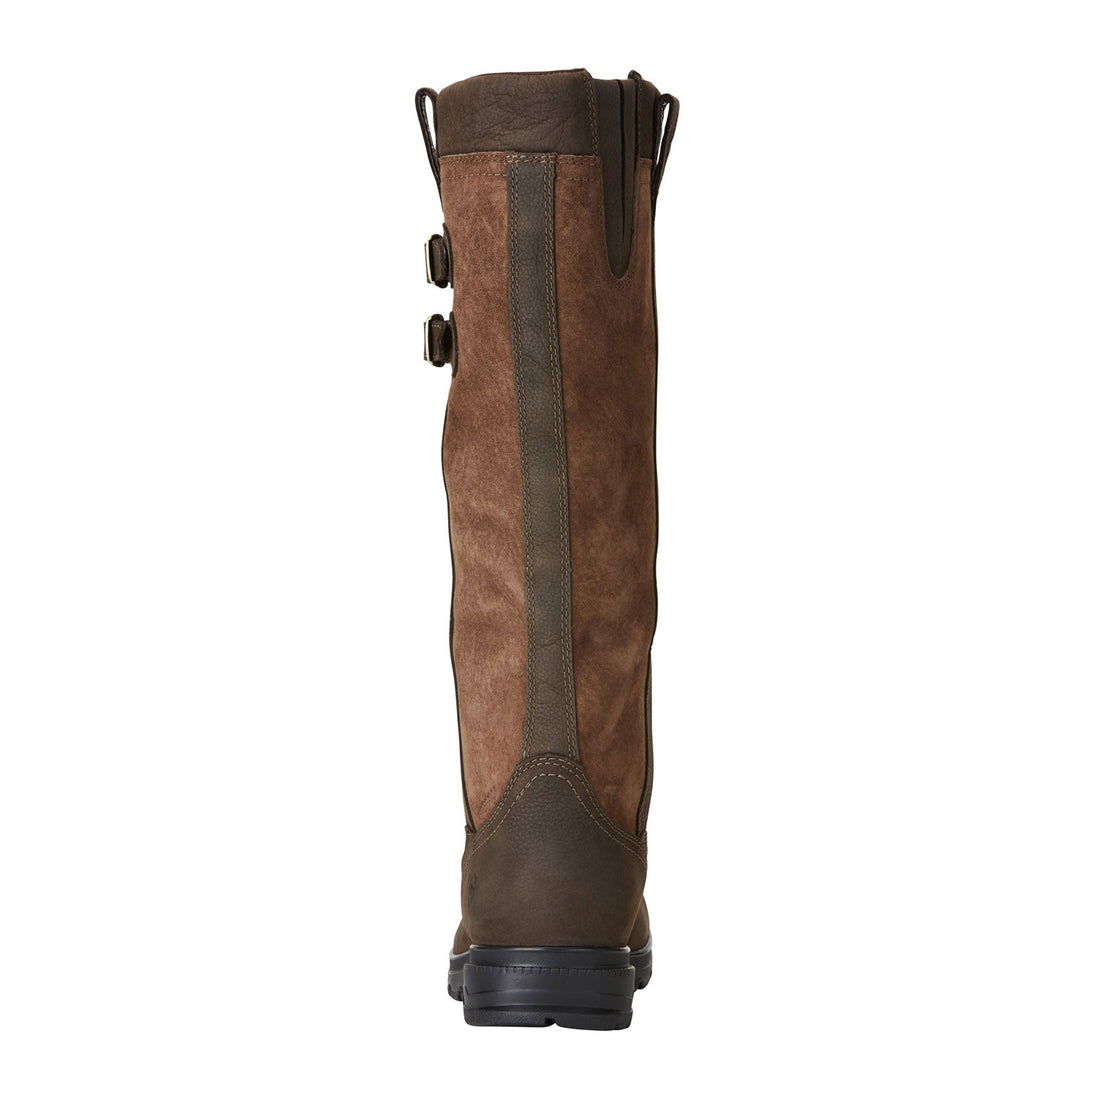 Ariat-Eskdale-Ladies-Waterproof-Country-Boots